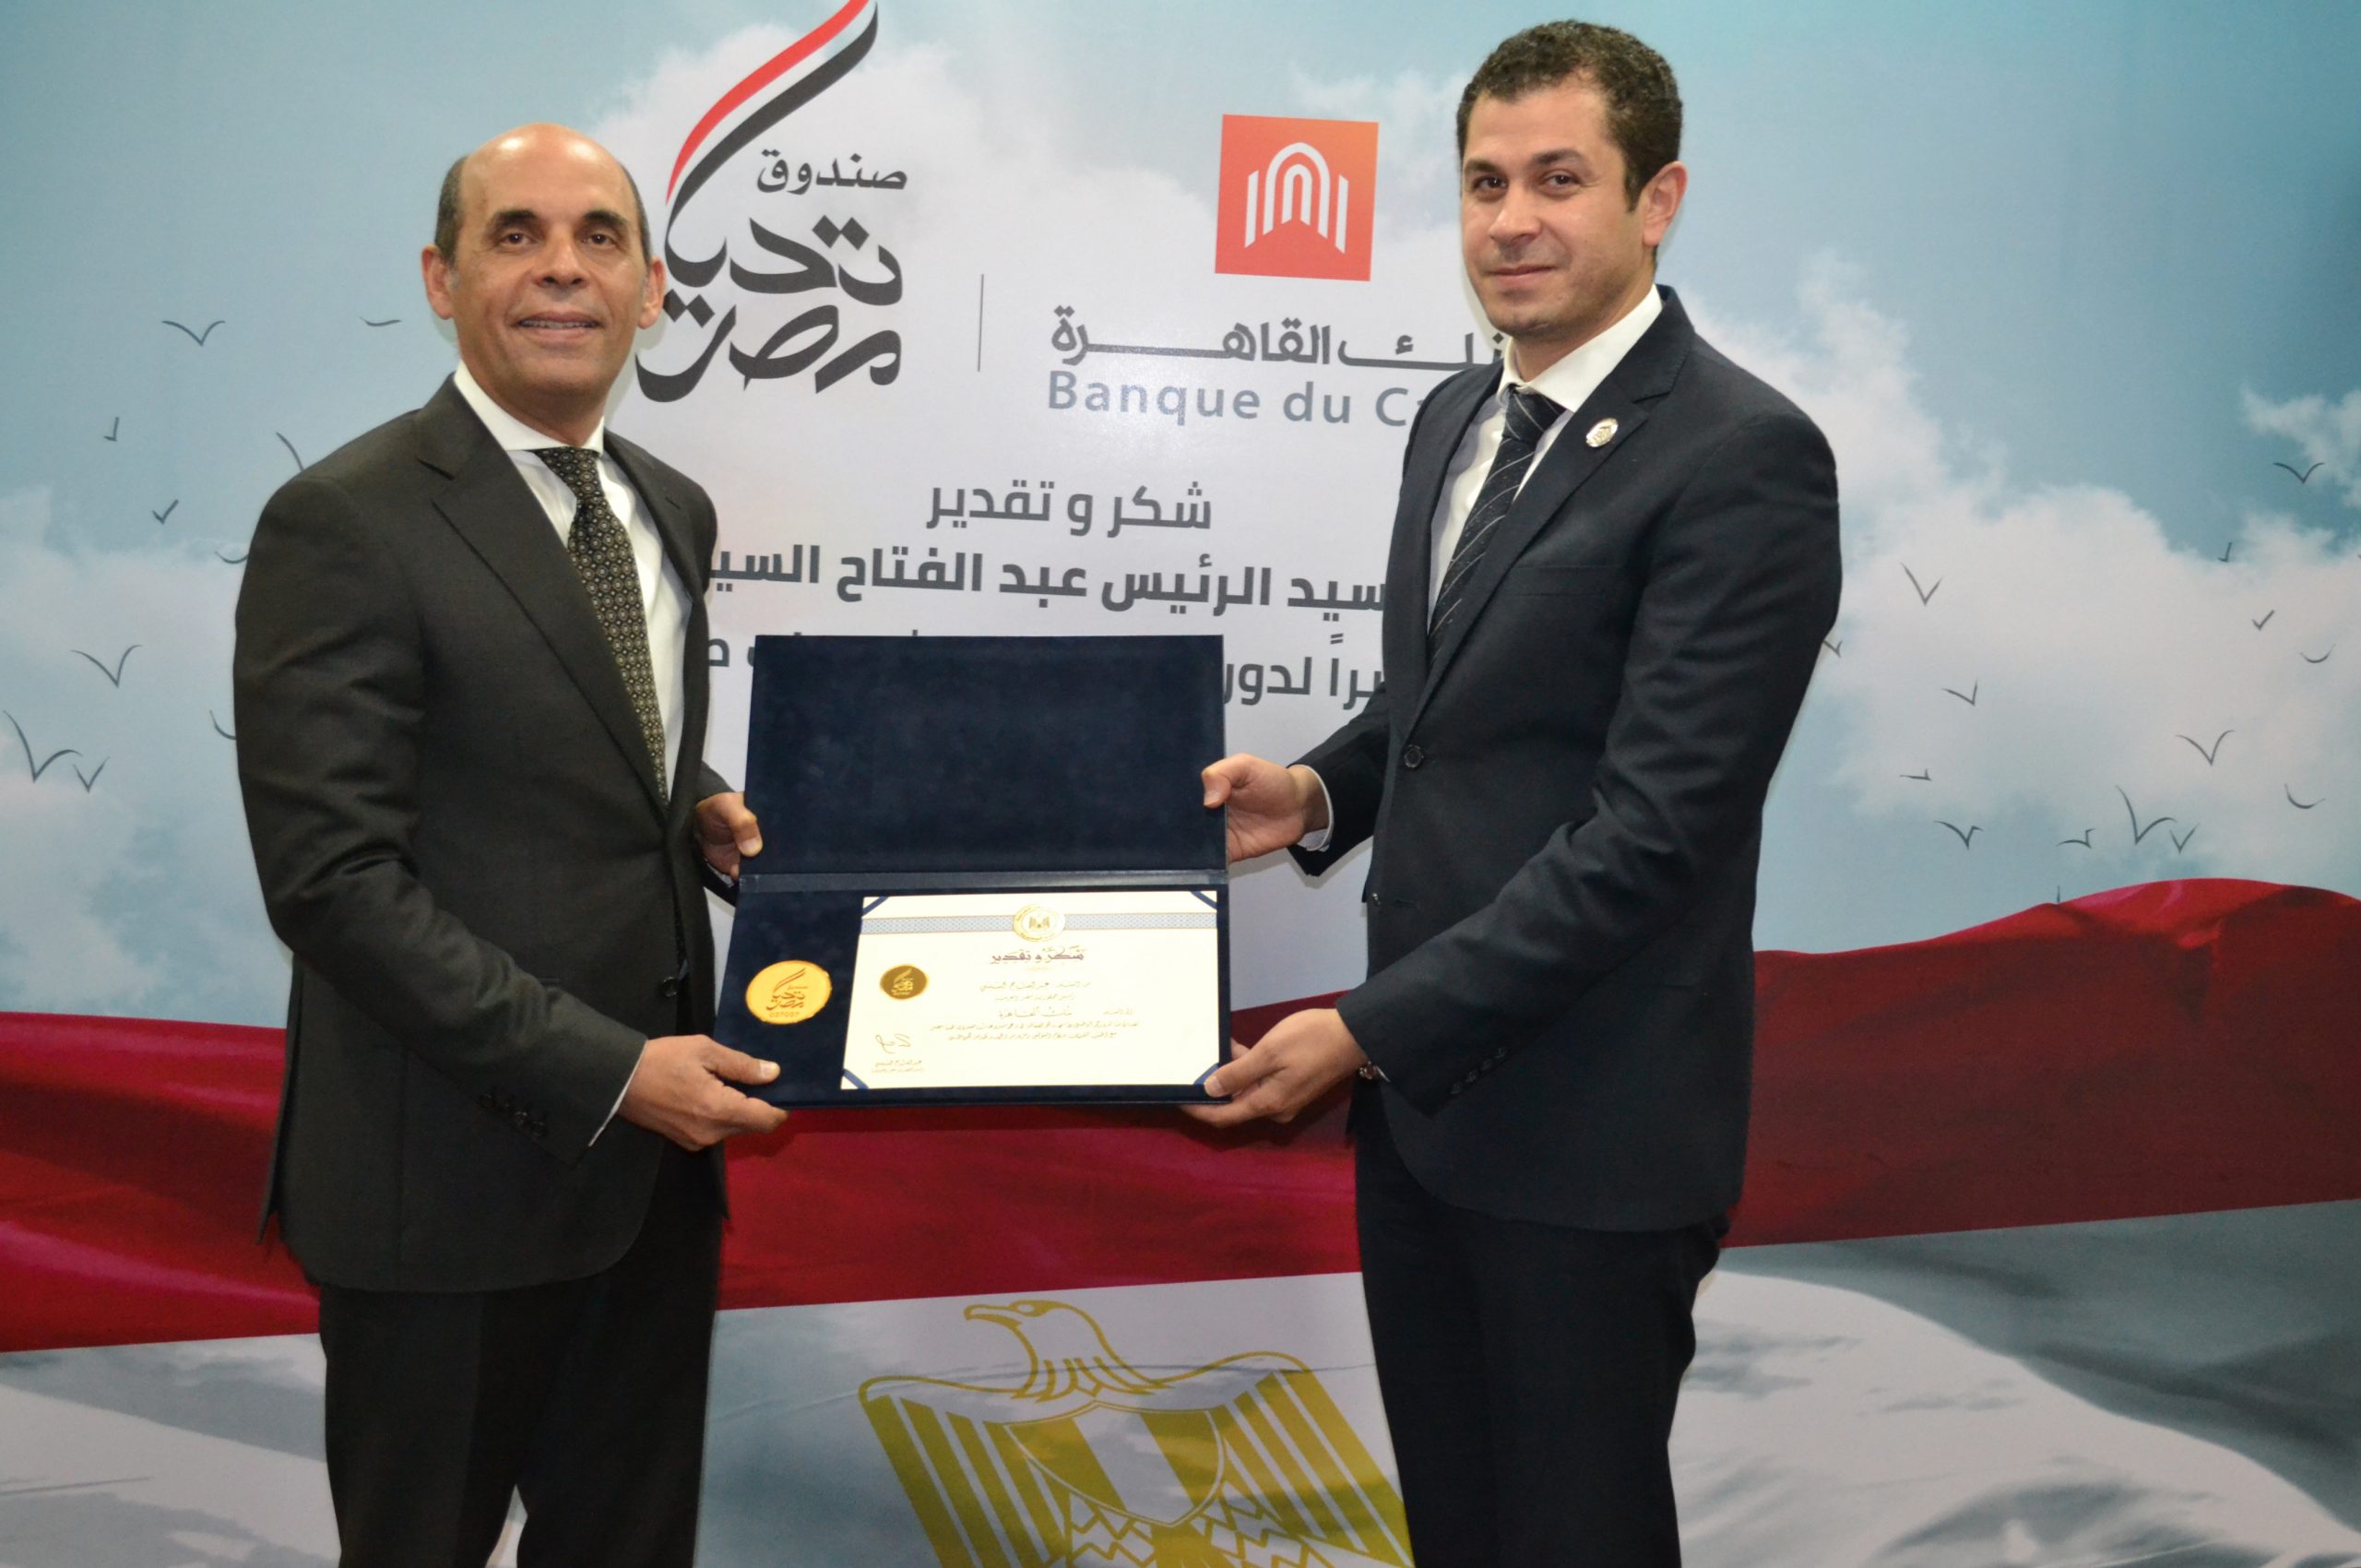   الرئيس السيسي يمنح بنك القاهرة شهادة تقدير لإسهاماته في دعم أنشطة «صندوق تحيا مصر»